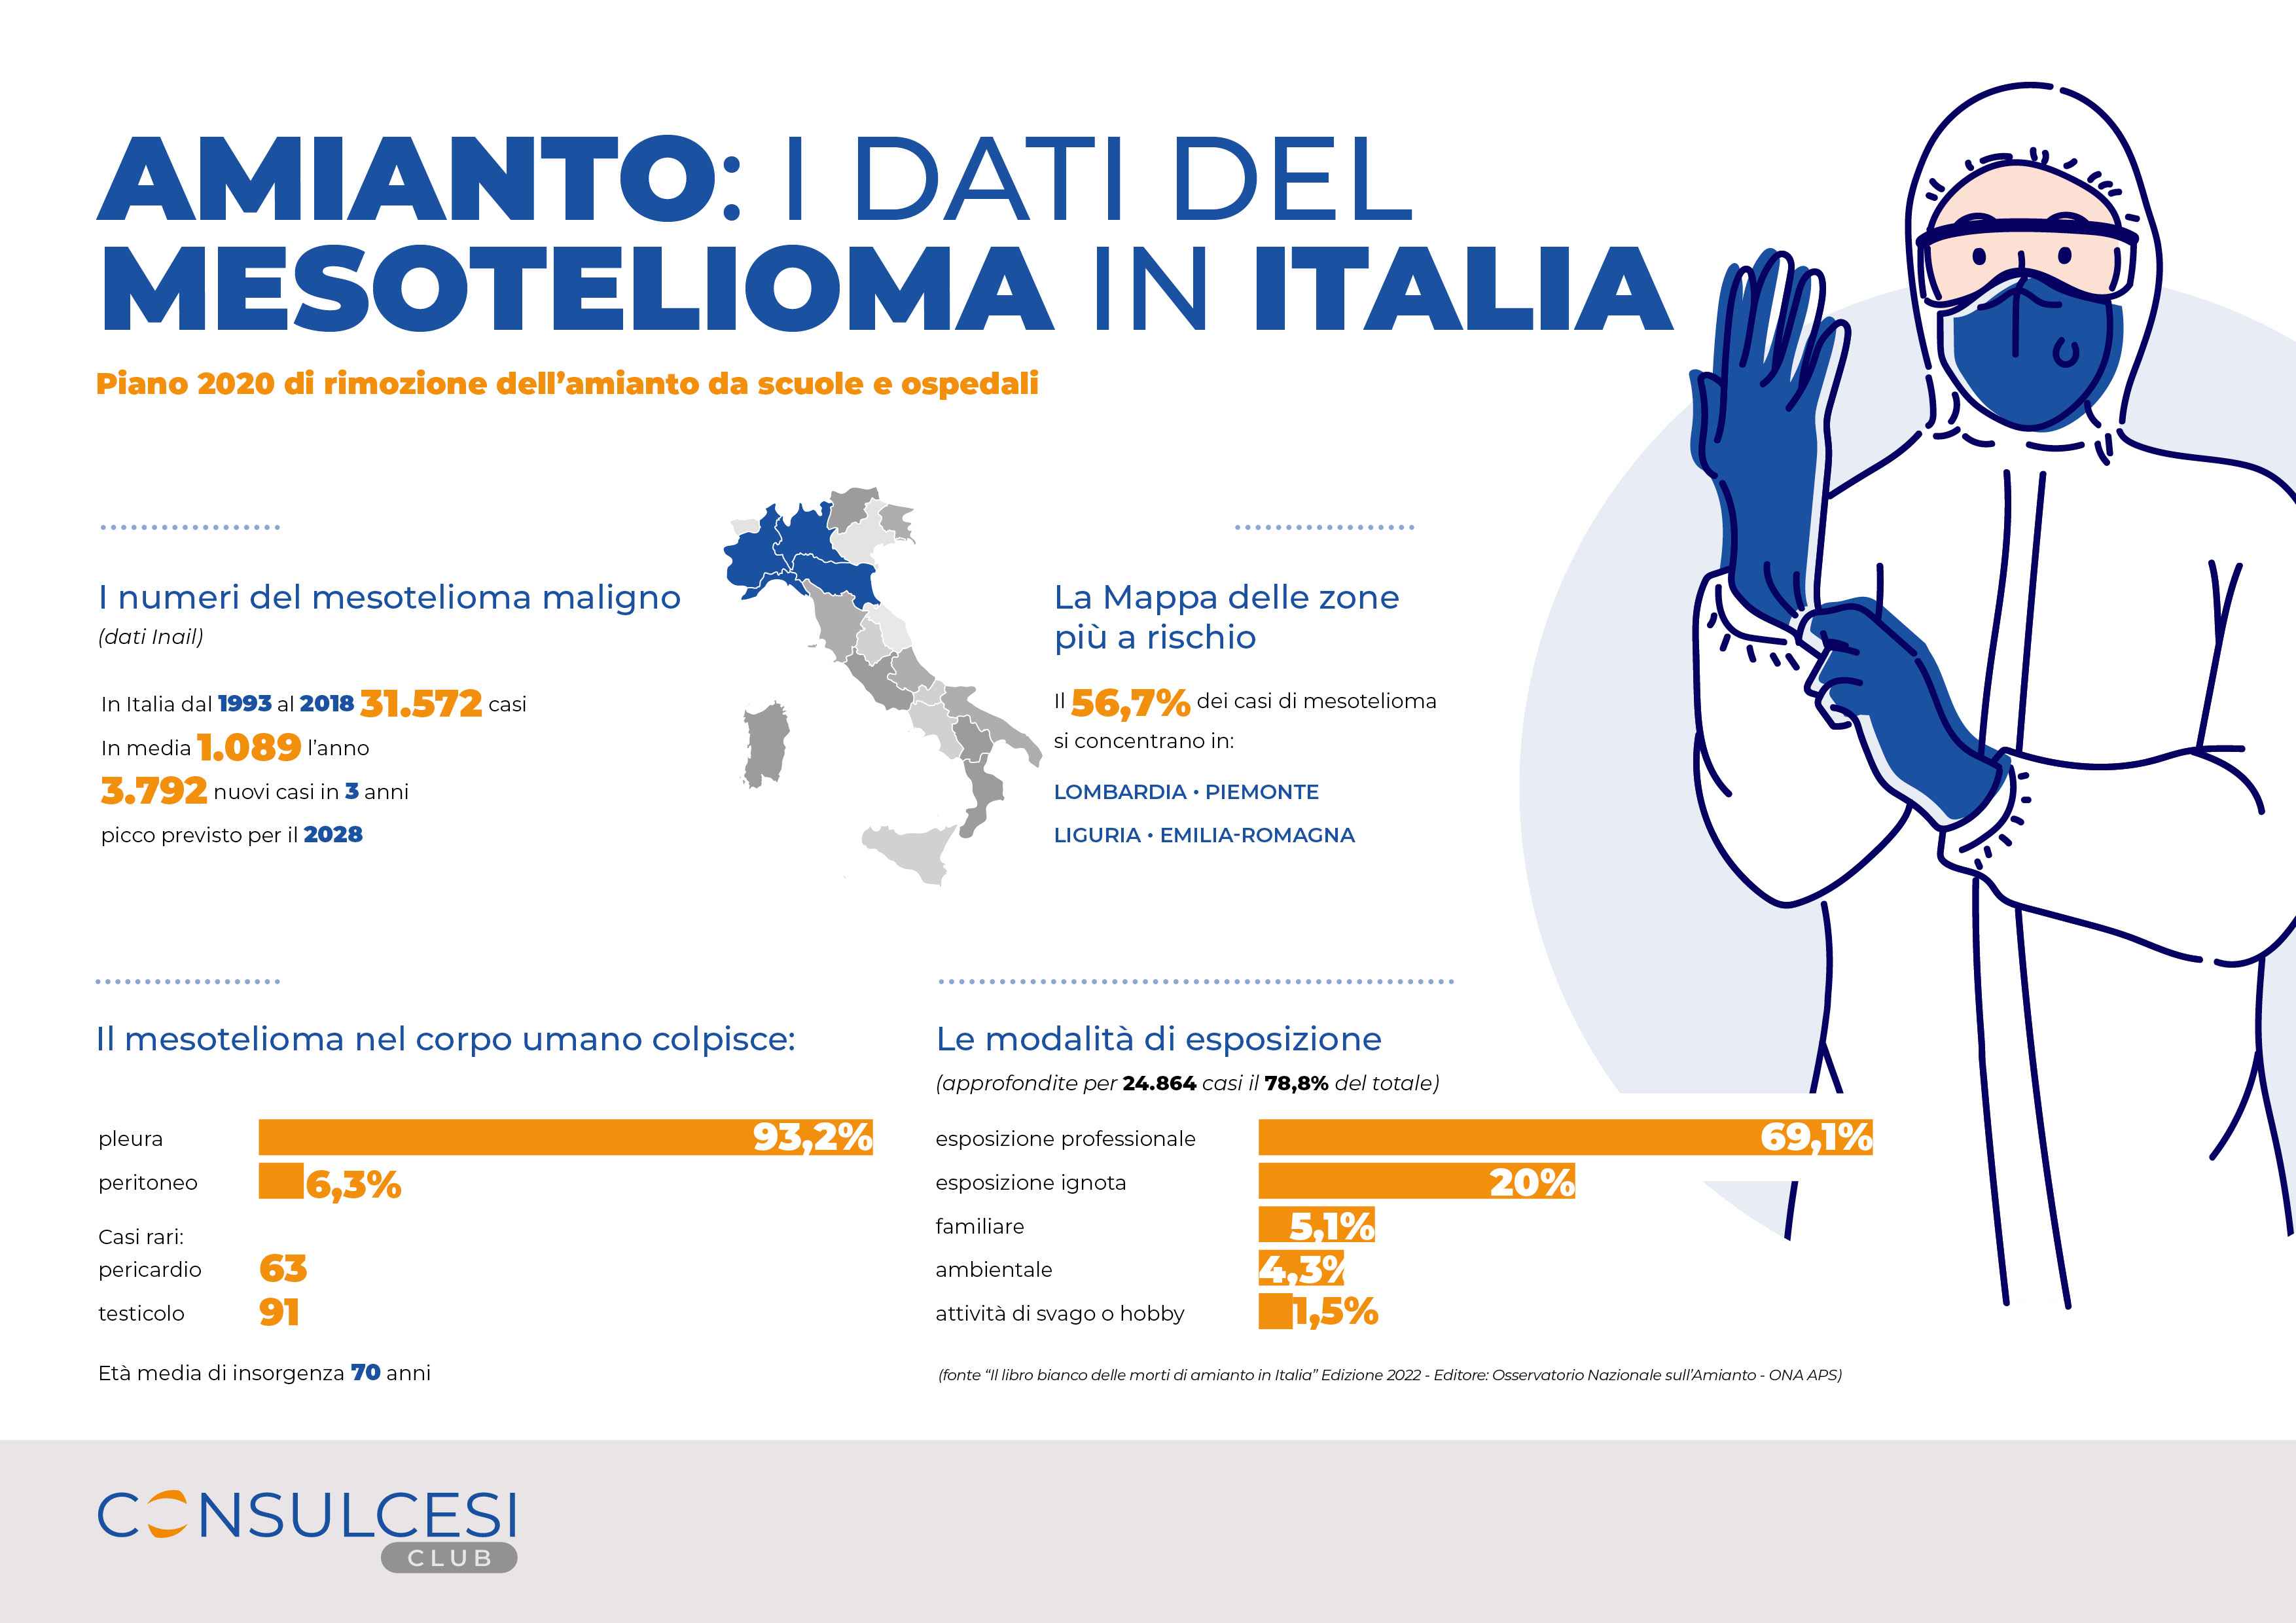 Amianto: i dati del mesotelioma in Italia